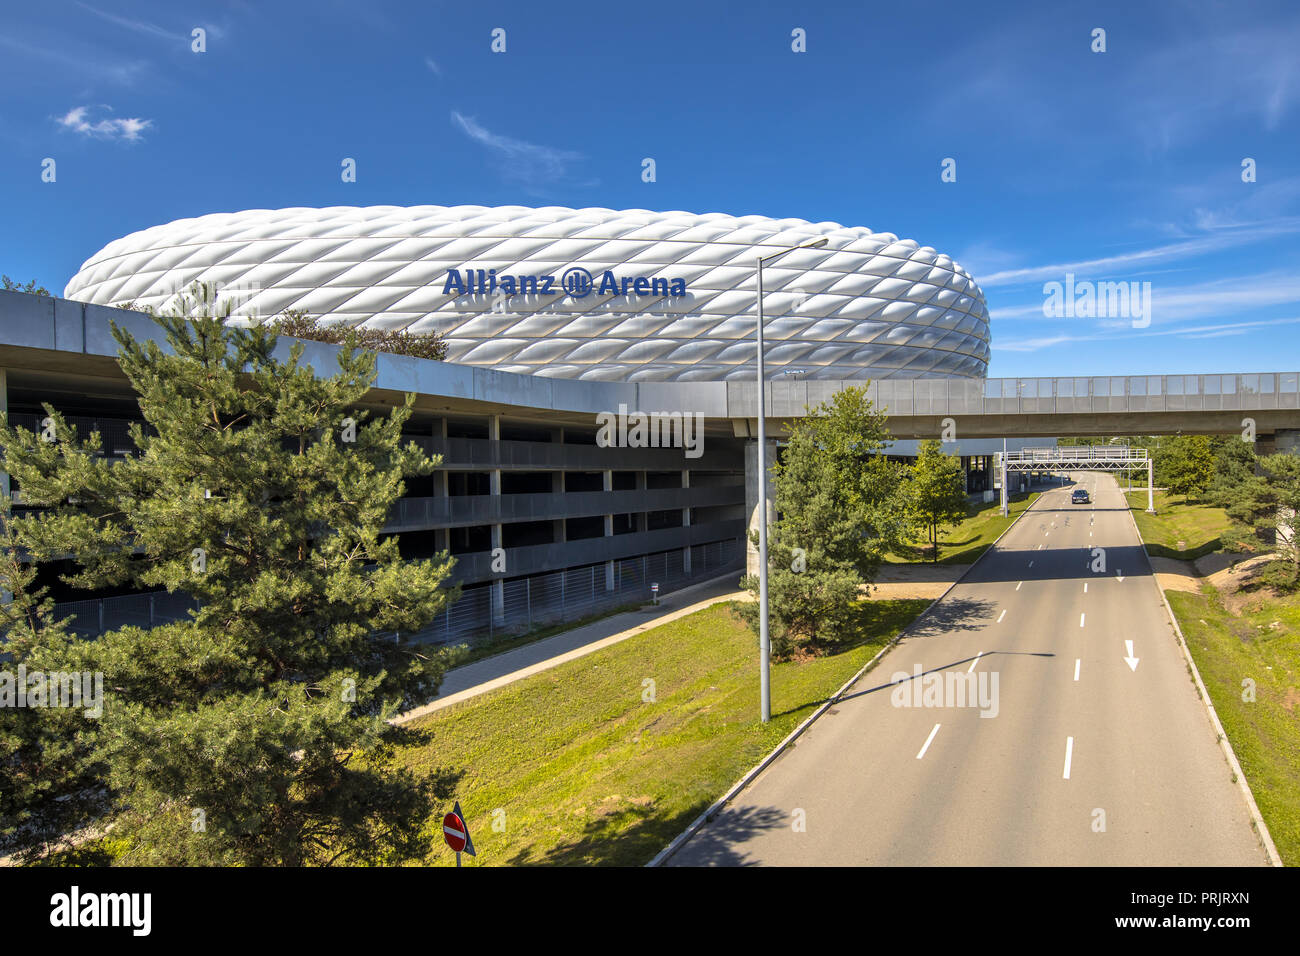 München, Deutschland - 14 AUGUST 2017: Weg zur Allianz Arena in München, Deutschland. Die Allianz Arena ist die Startseite Fußball-Stadion für den FC Bayern München Stockfoto